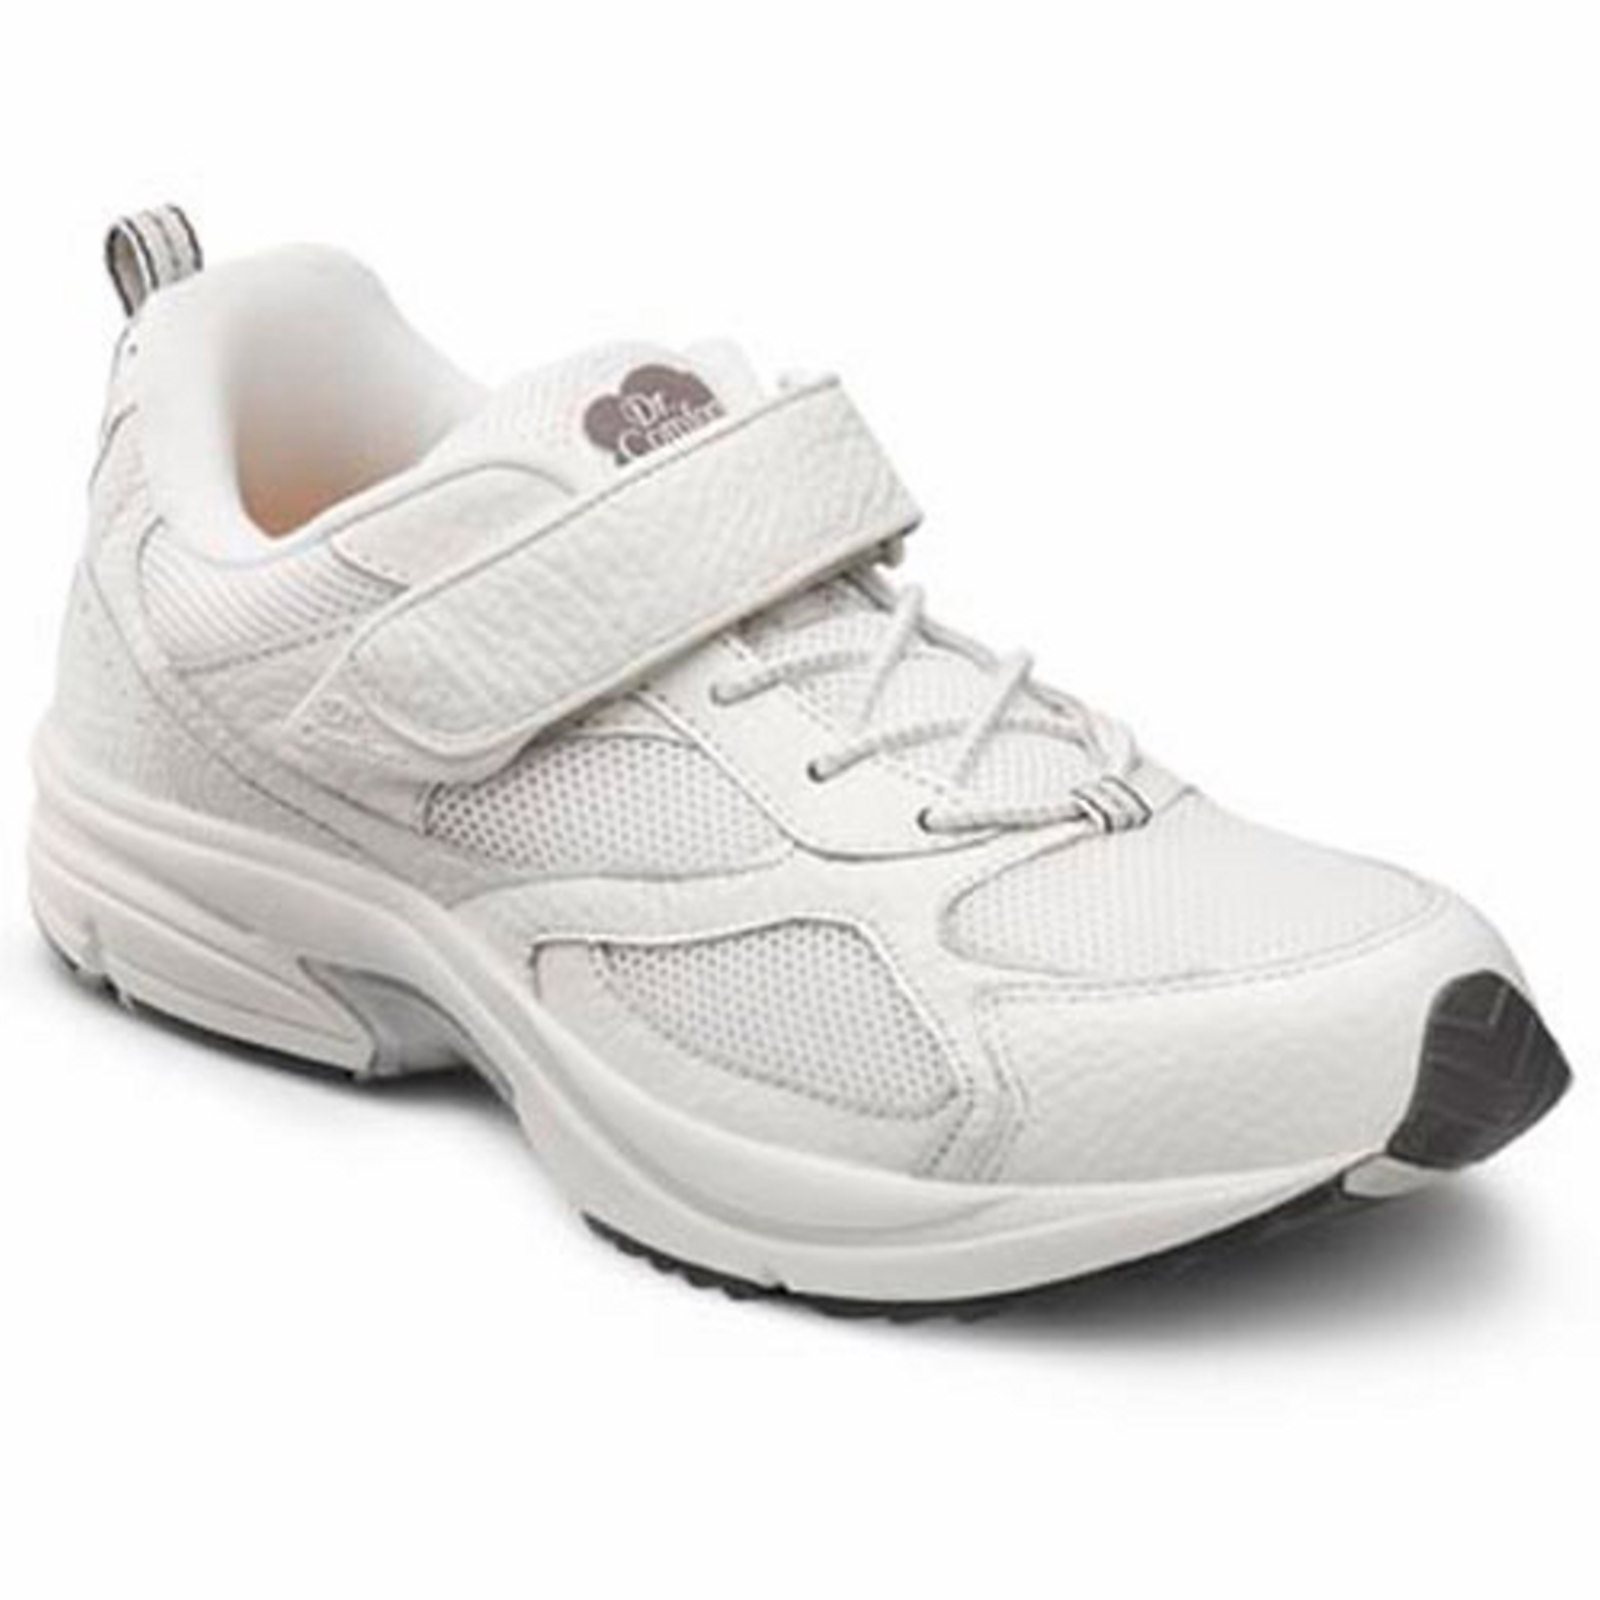 Dr. Comfort Endurance Men's Athletic Shoe: 12 Wide (E/2E) Black Elastic Lace w/Strap - image 2 of 5